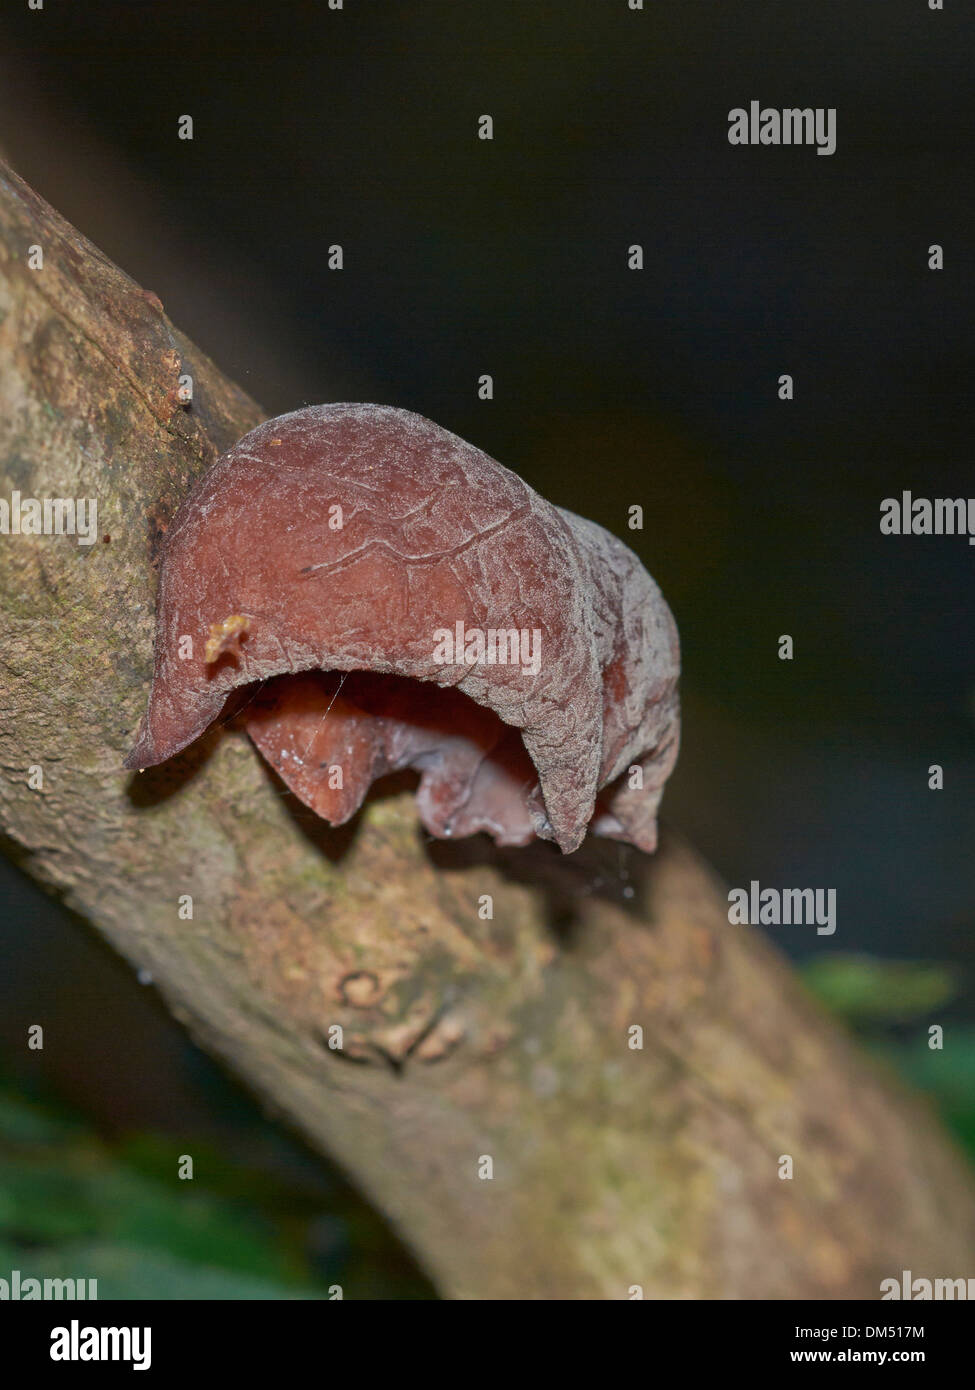 Jelly ear fungi on tree branch Stock Photo